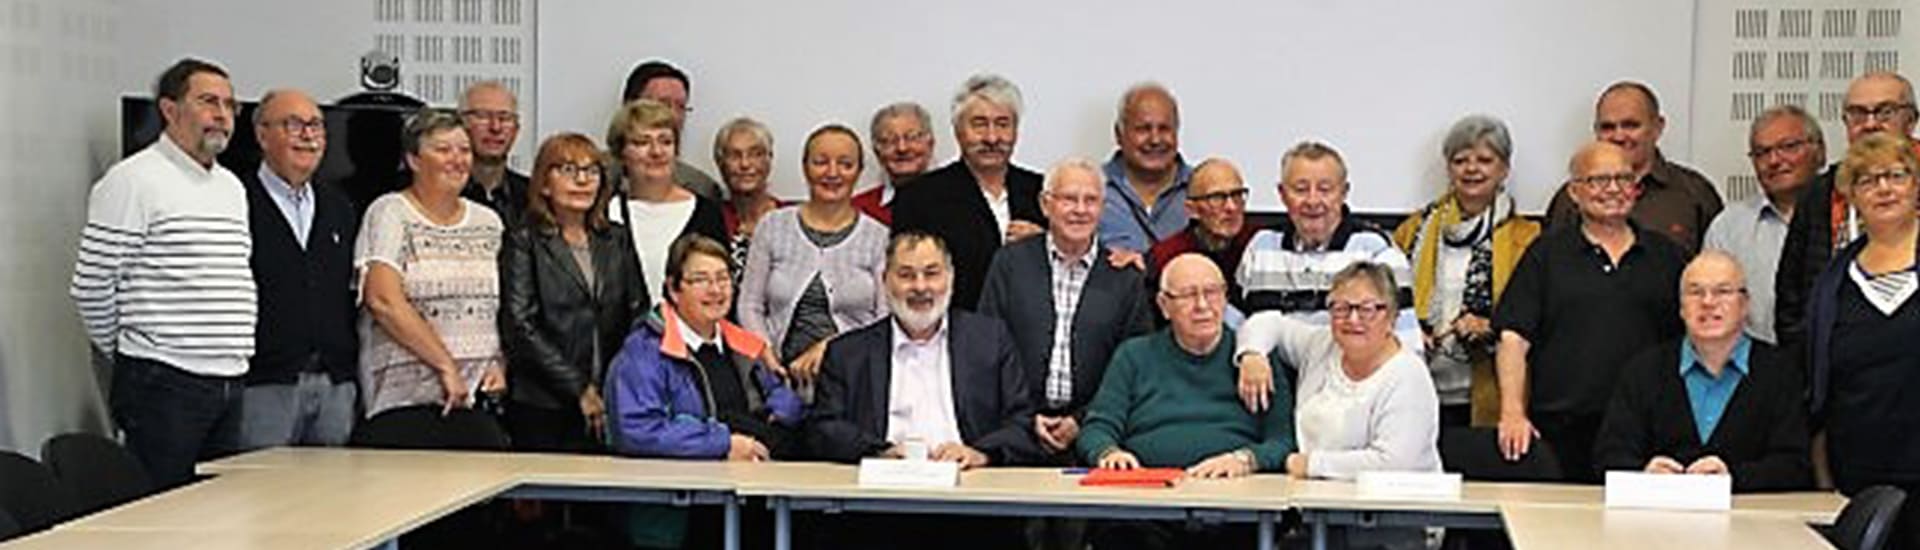 Assemblée générale 2019 du Comité Nord